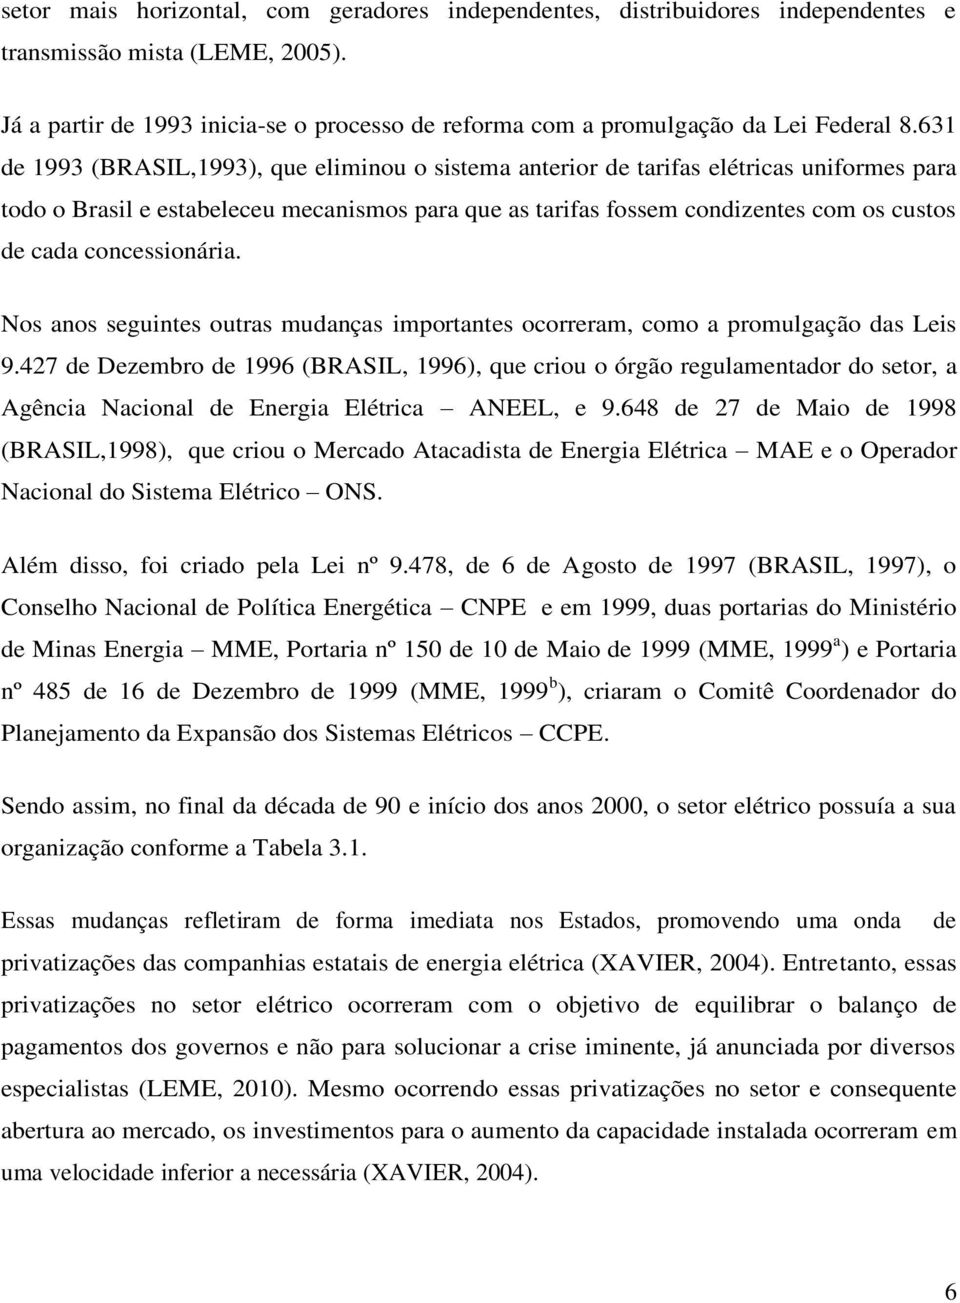 631 de 1993 (BRASIL,1993), que eliminou o sistema anterior de tarifas elétricas uniformes para todo o Brasil e estabeleceu mecanismos para que as tarifas fossem condizentes com os custos de cada